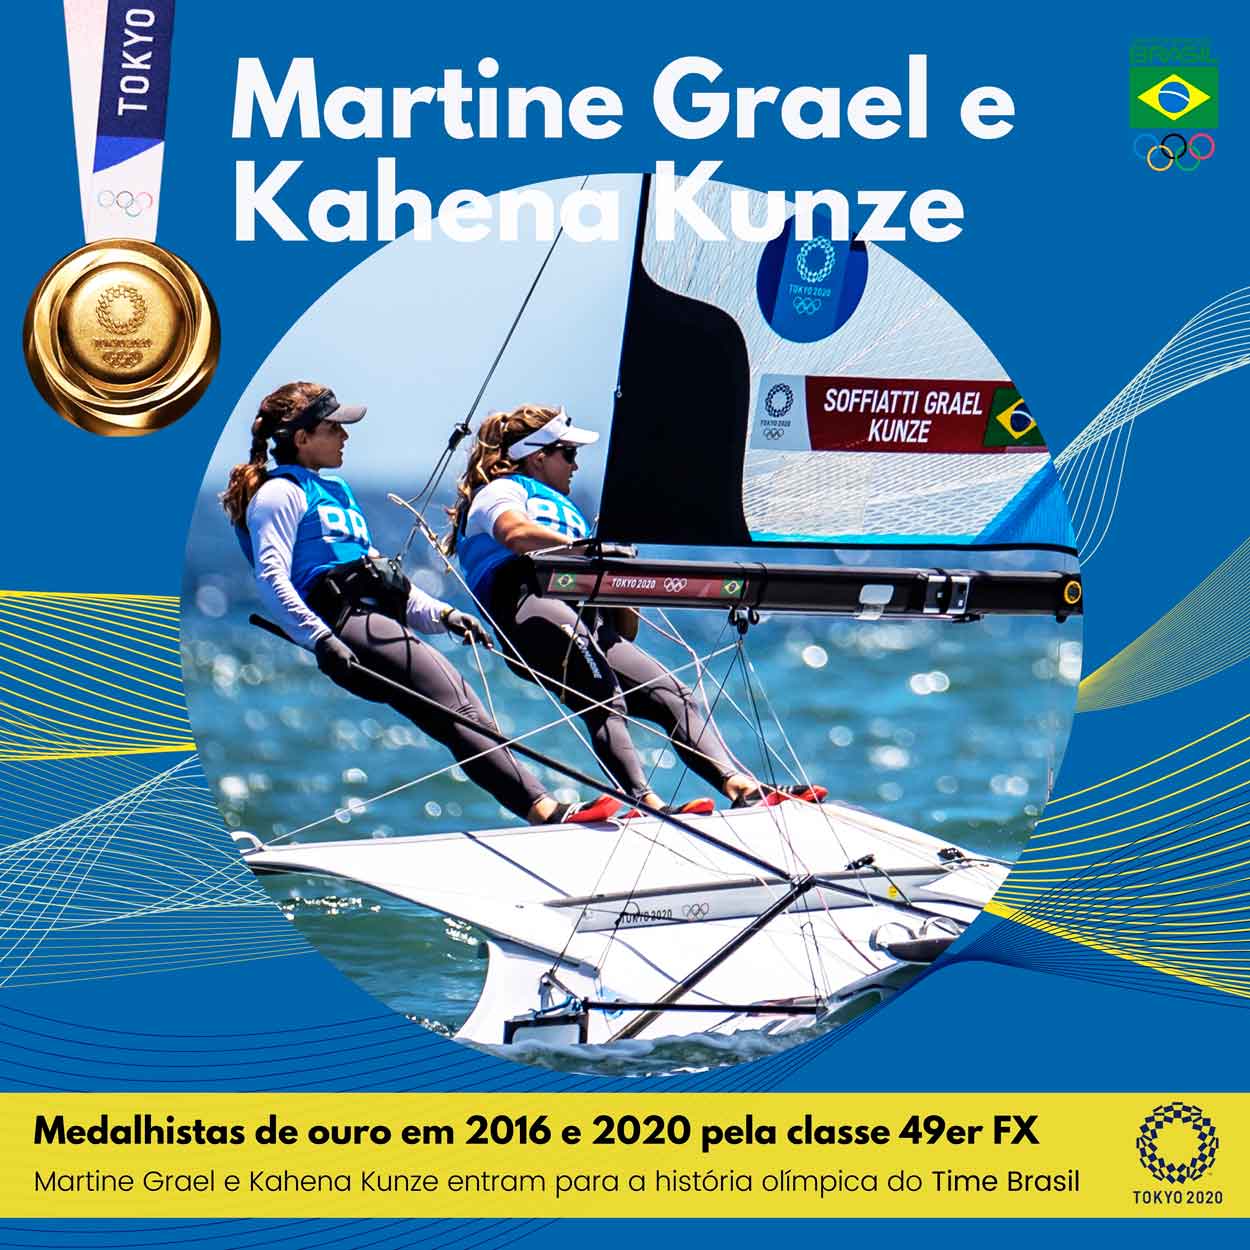 Martine Grael e Kahena Kunze unem tradição e condições favoráveis para se tornar bicampeãs olímpicas